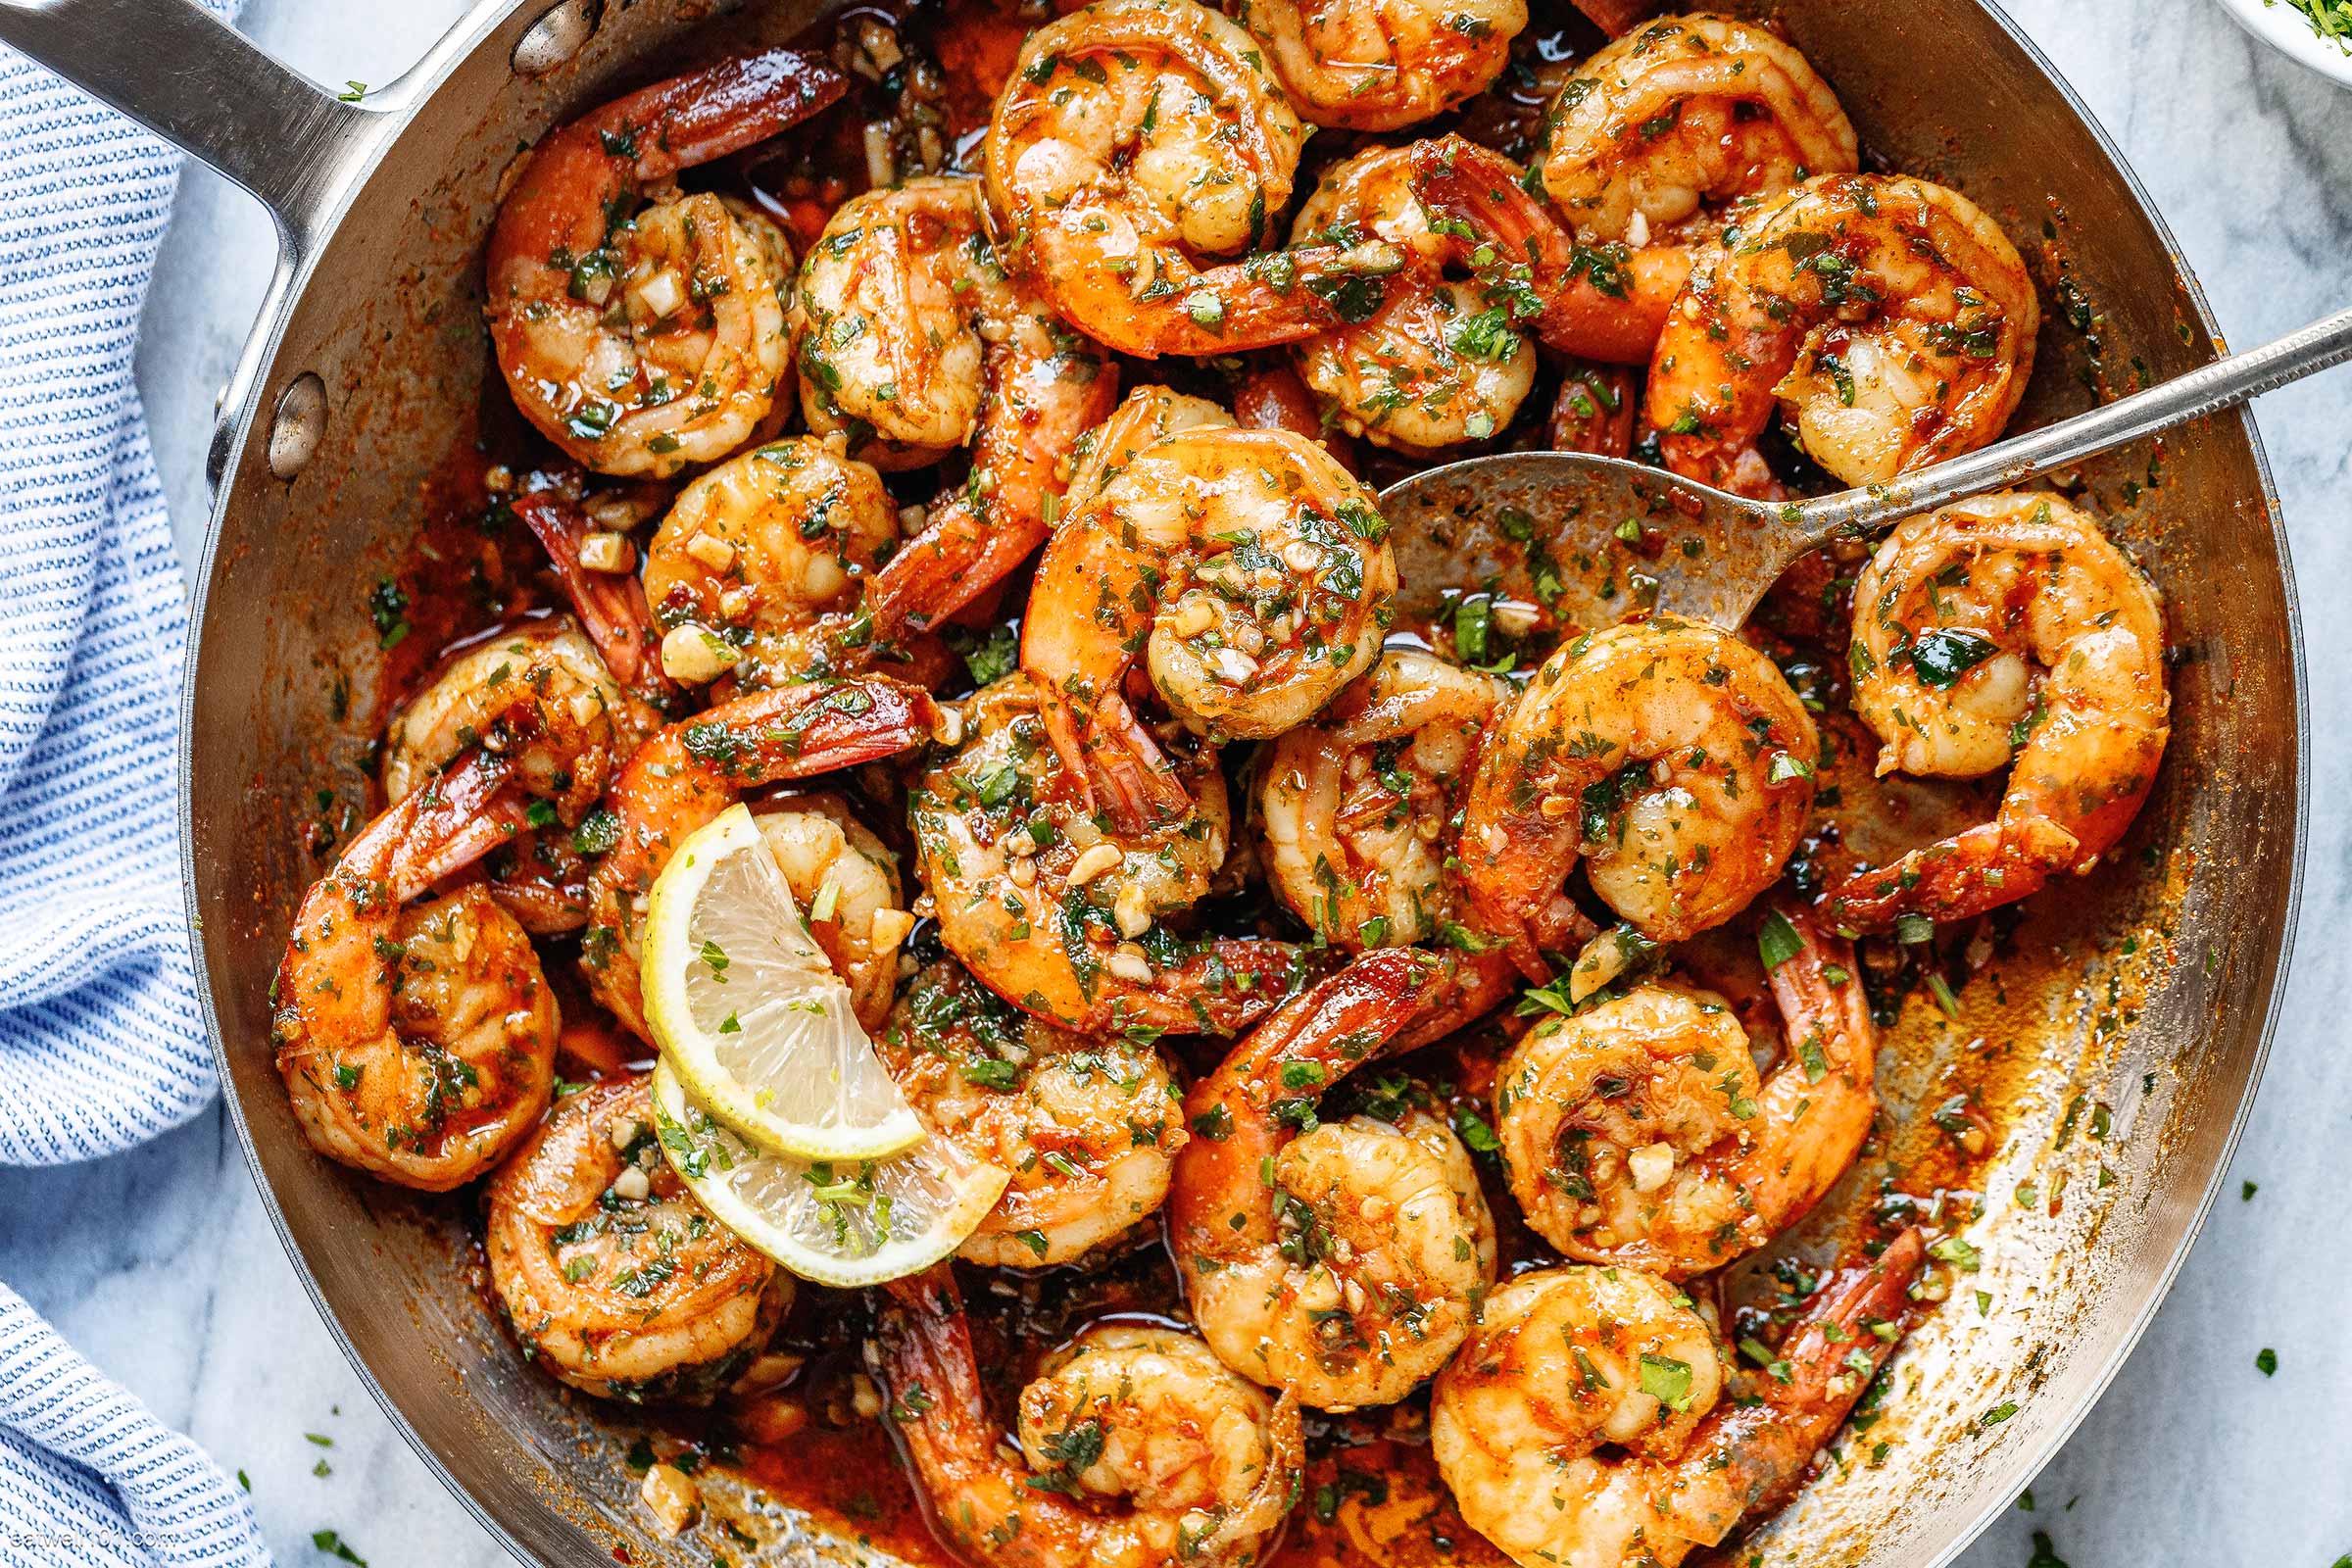 https://www.eatwell101.com/wp-content/uploads/2021/06/Garlic-Butter-Shrimp-recipe.jpg